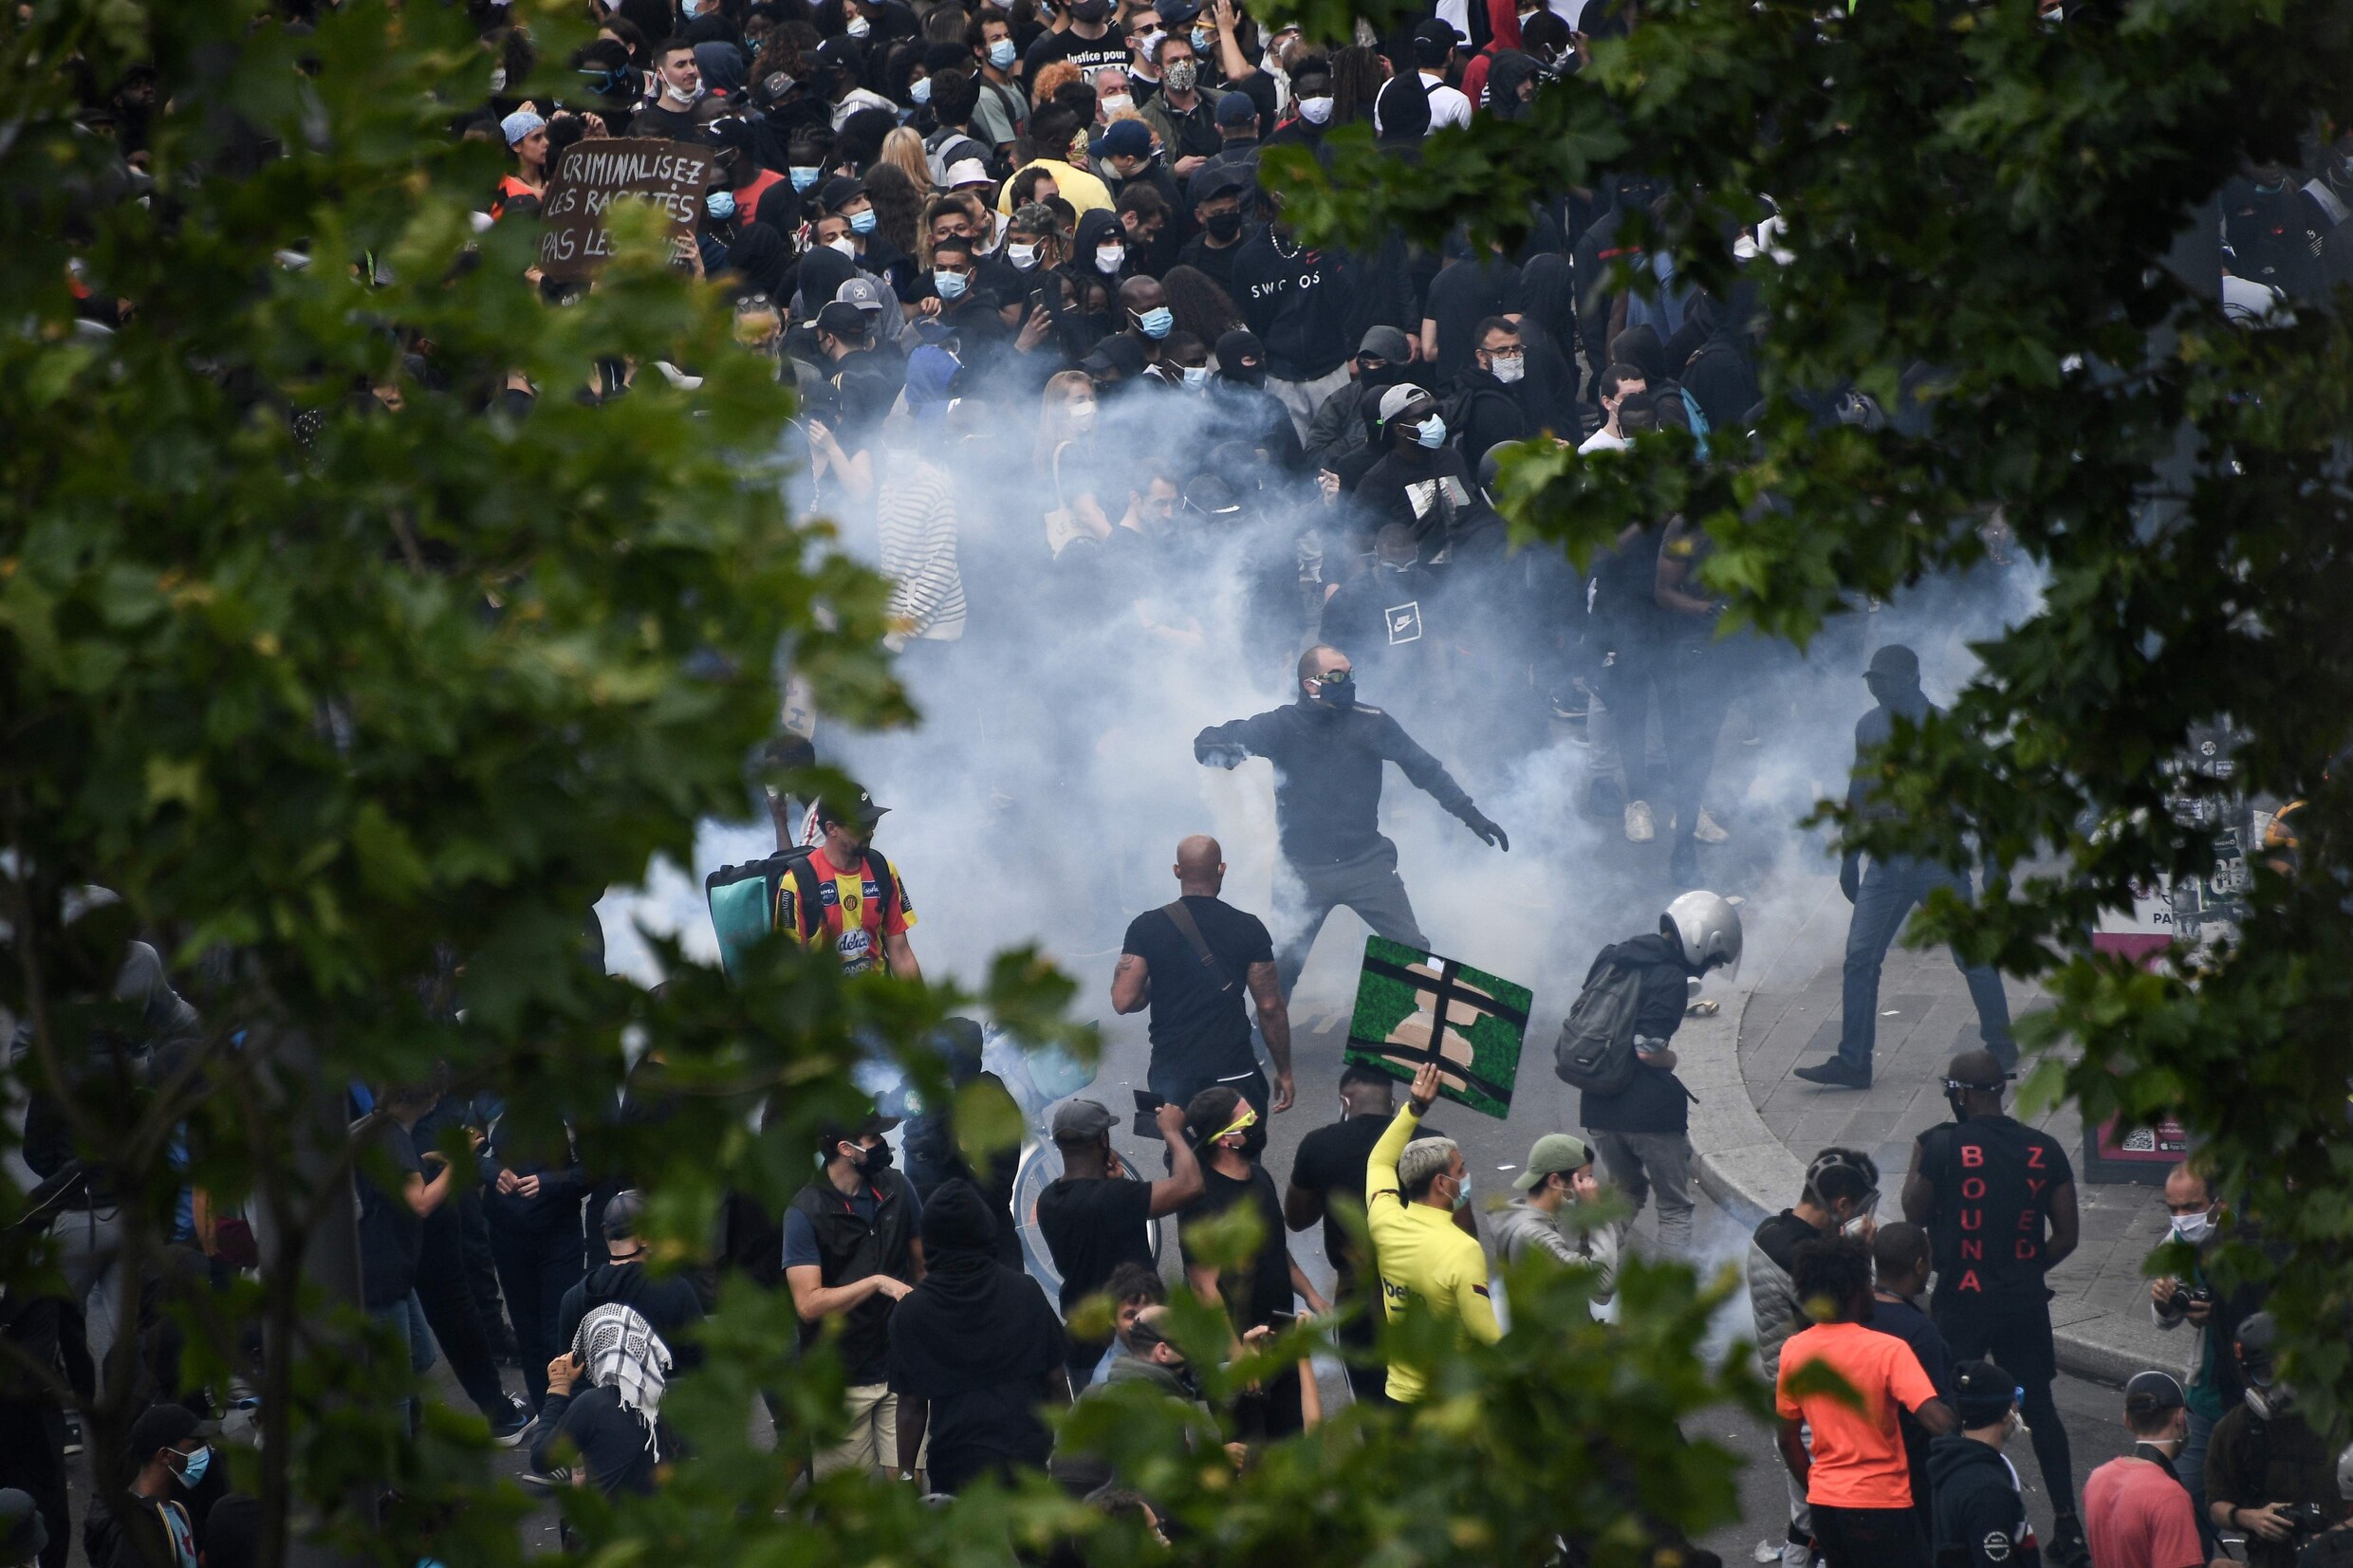 Betogers en ordediensten clashen bij demonstratie tegen racisme en politiegeweld in Parijs